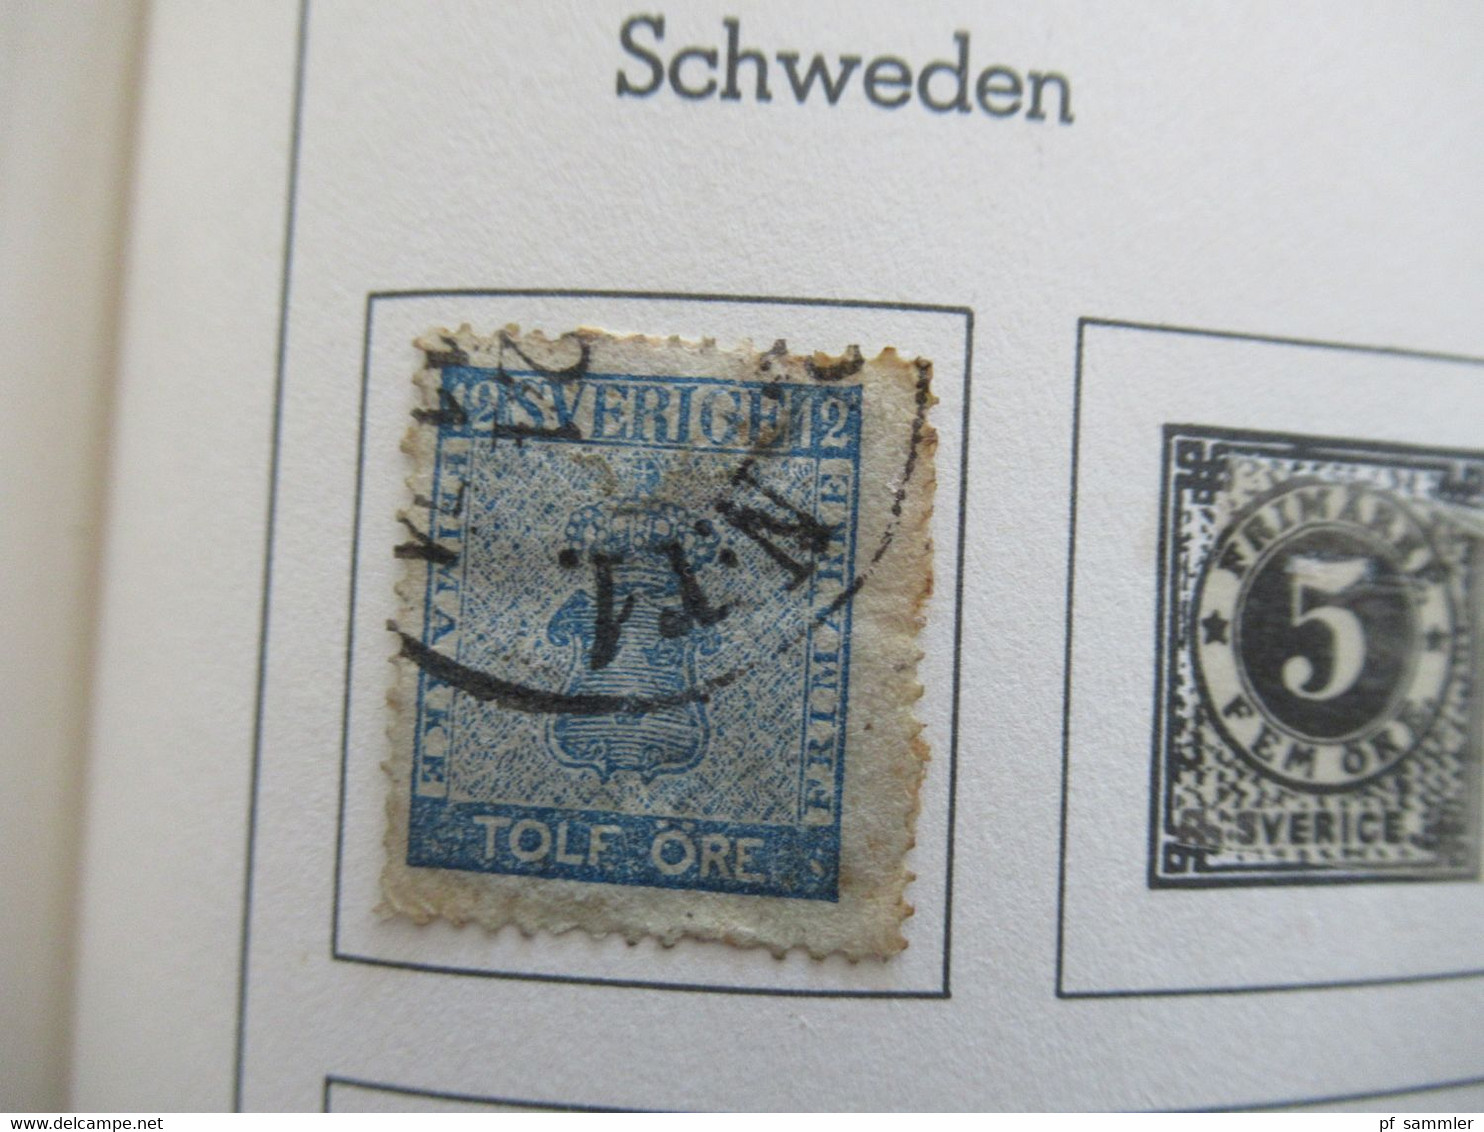 Leuchtturm Briefmarken Album Die Ganze Welt / Vordruckalbum etliche Marken! Gestempelt / o / eingeklebt!!